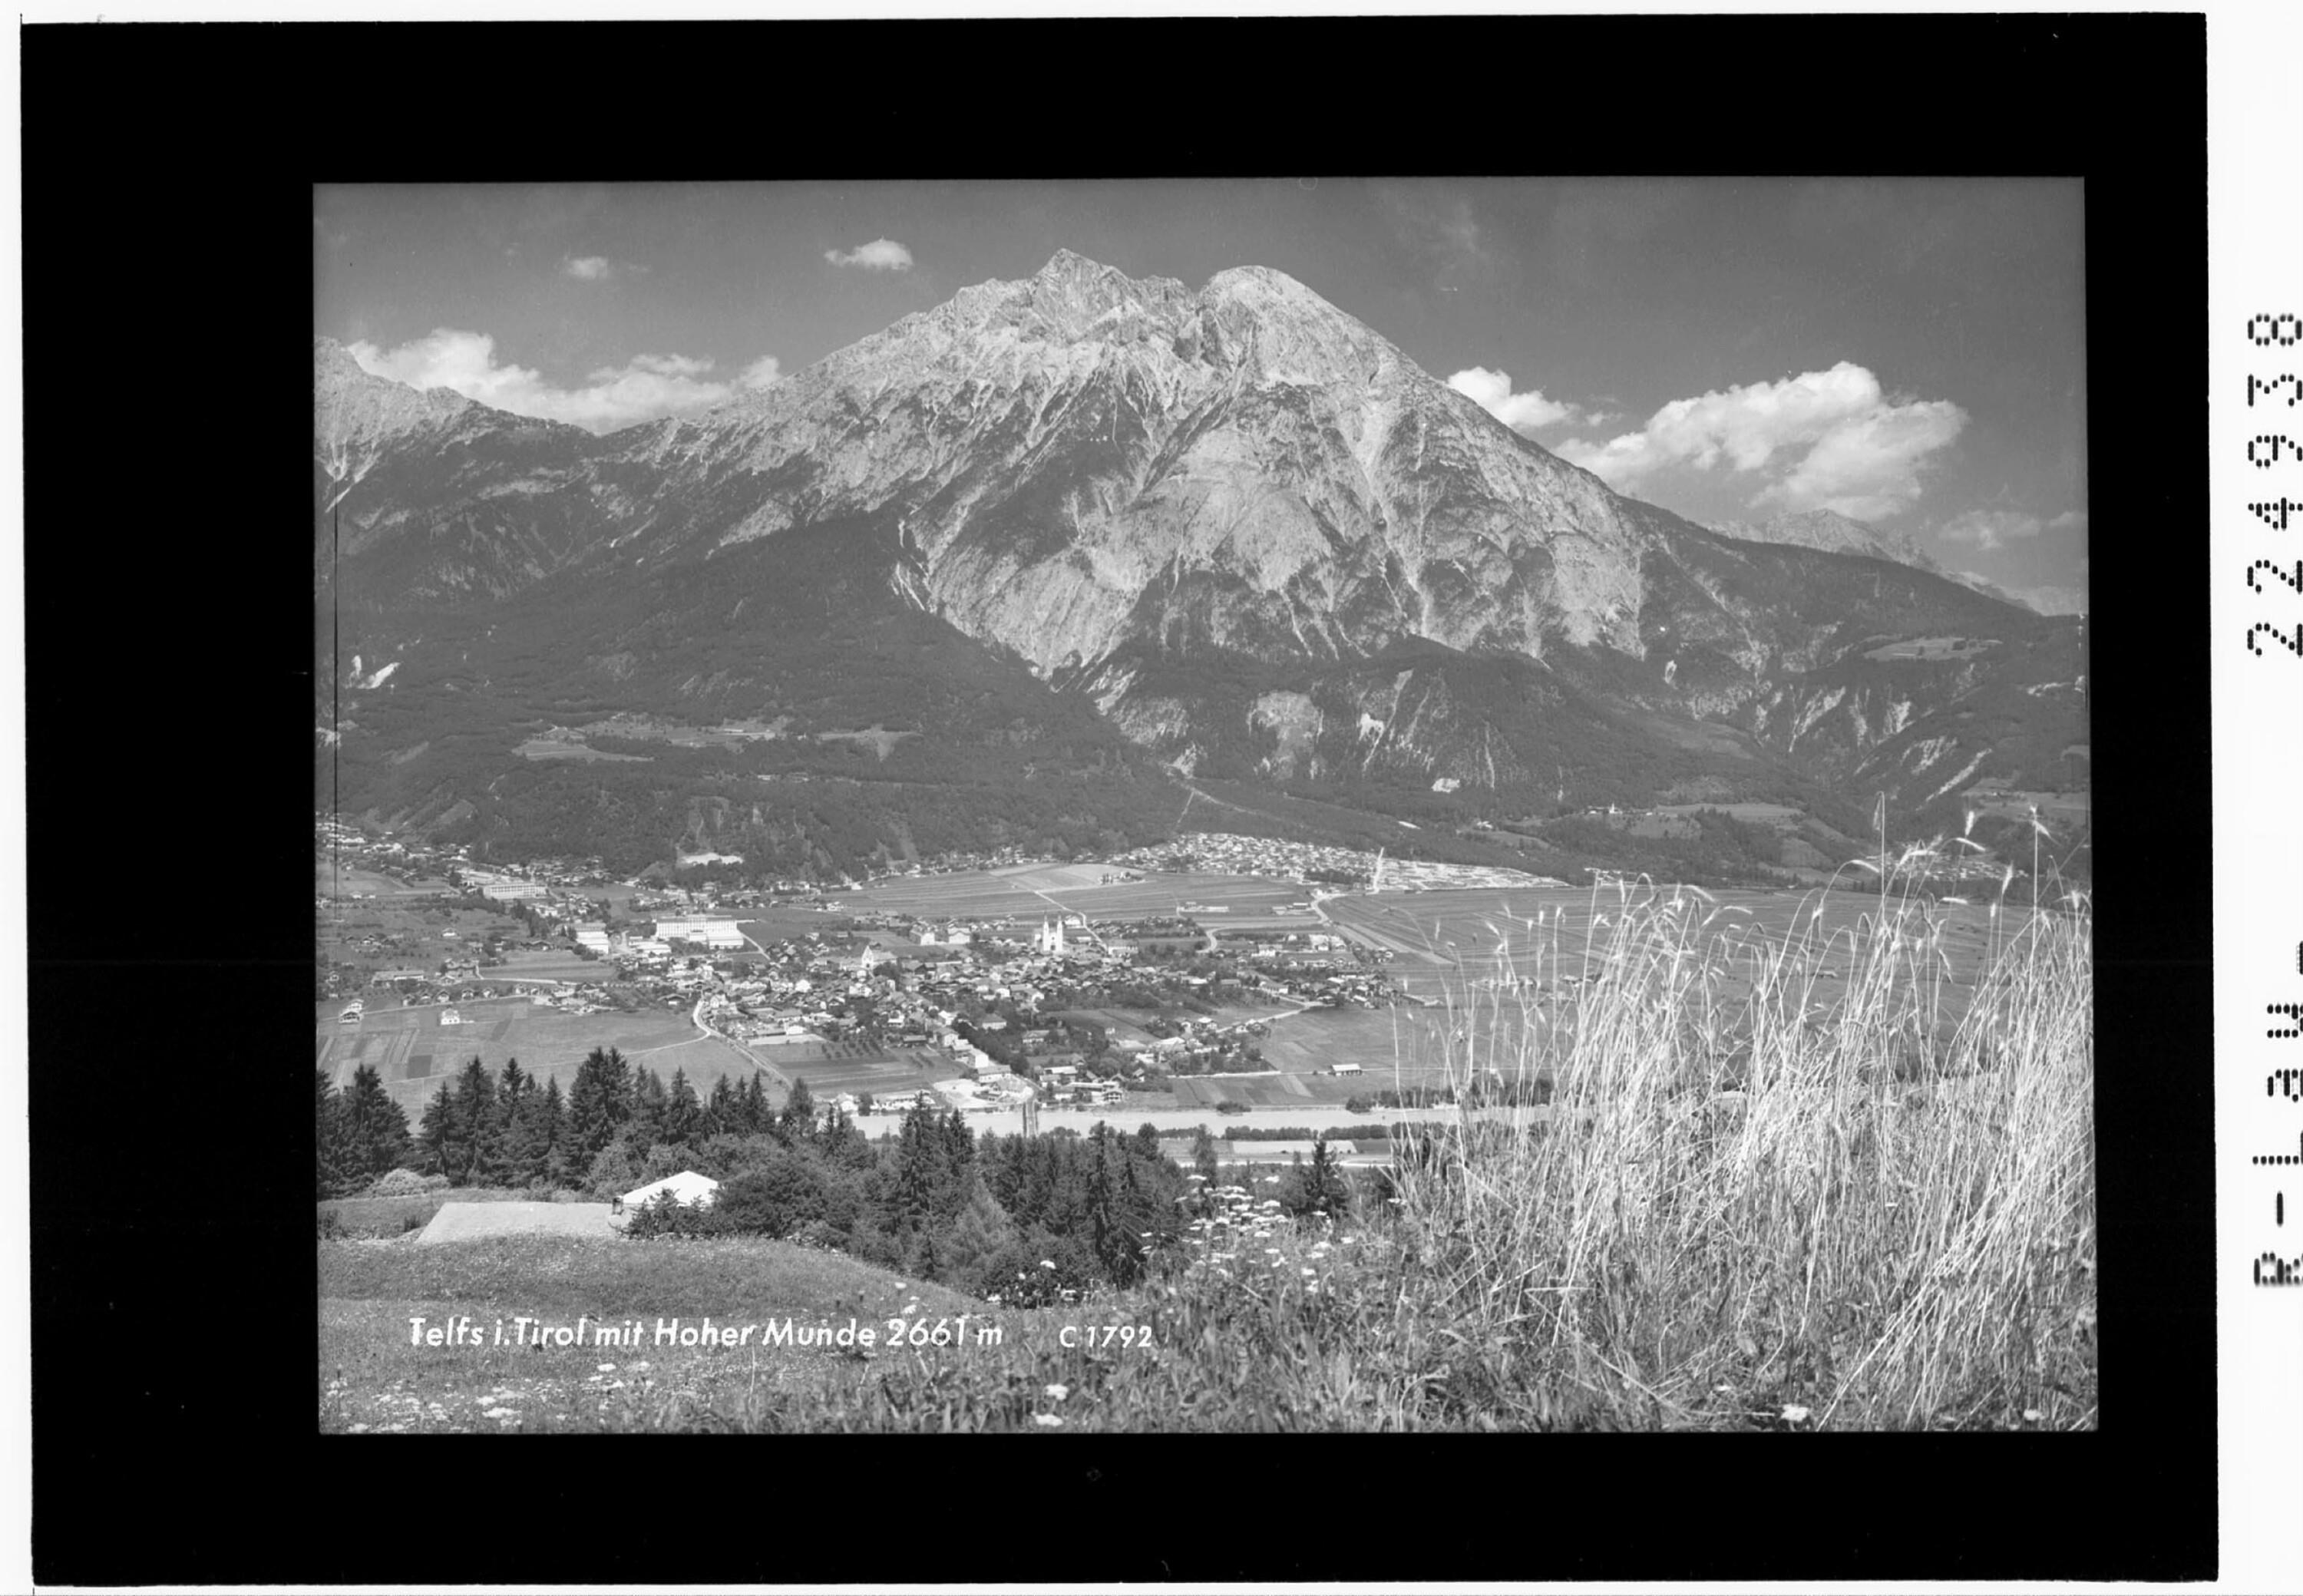 Telfs in Tirol mit Hoher Munde 2661 m></div>


    <hr>
    <div class=